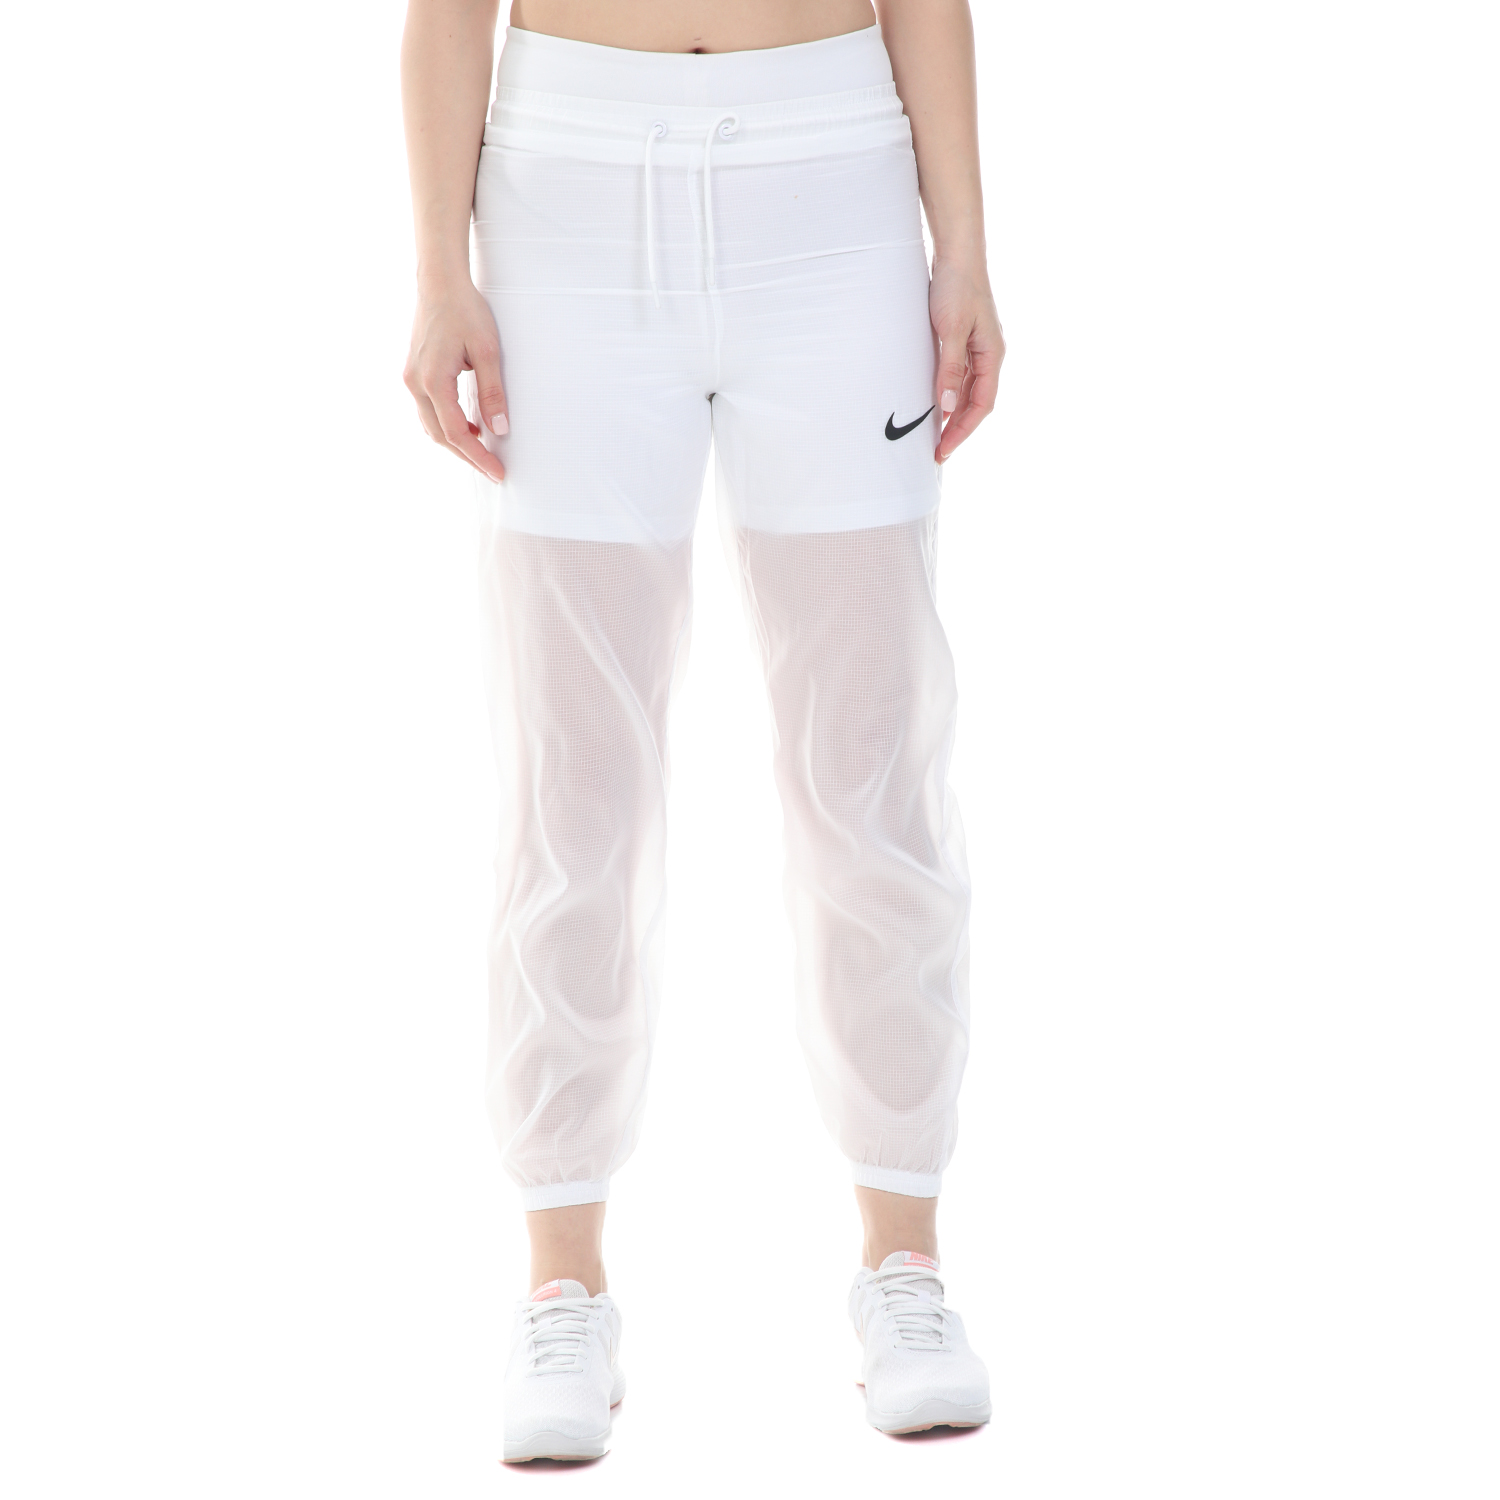 Γυναικεία/Ρούχα/Αθλητικά/Φόρμες NIKE - Γυναικεία φόρμα NIKE NSW INDIO PANT WOVEN λευκή